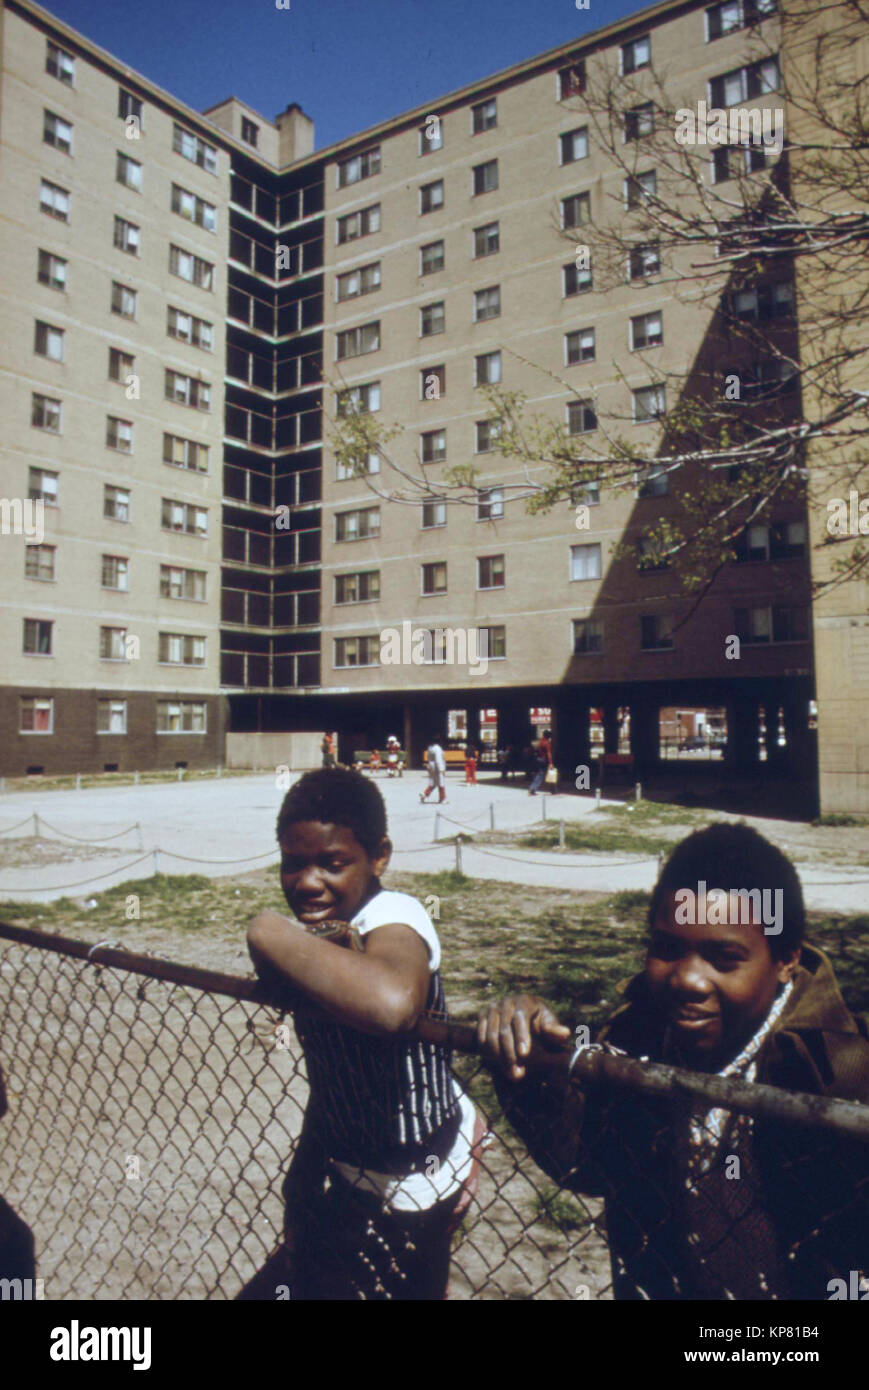 Les jeunes Noirs à l'extérieur de l'immeuble tour Stateway Gardens Housing Project sur le côté sud de Chicago. C'était pendant des années, l'une des régions les plus dangereuses de Chicago rempli de la violence des gangs, la drogue et la vente de la prostitution. Banque D'Images